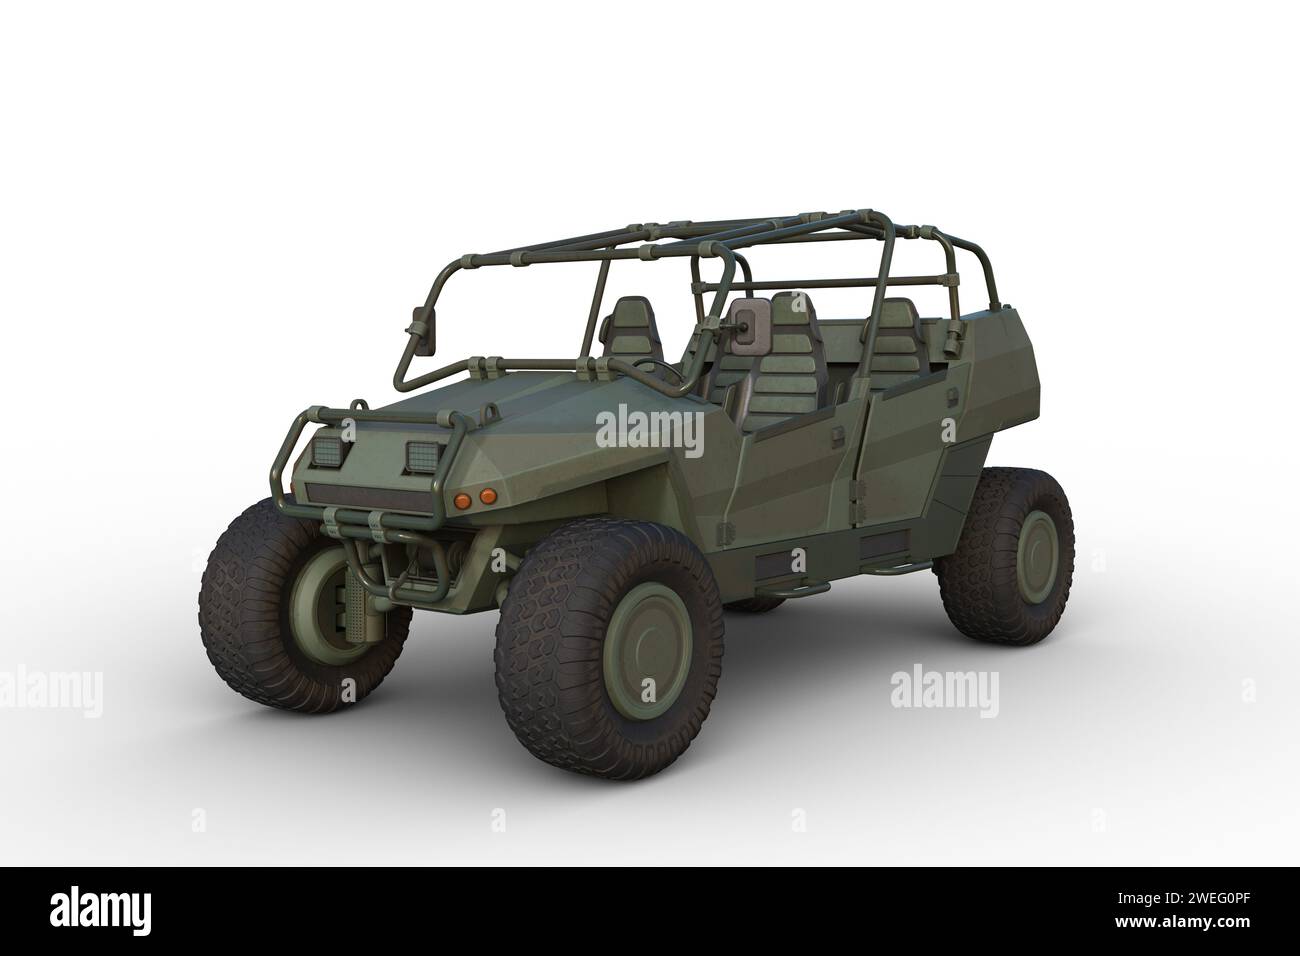 Illustrazione 3D di un veicolo militare All Terrain verde isolato su uno sfondo bianco. Foto Stock